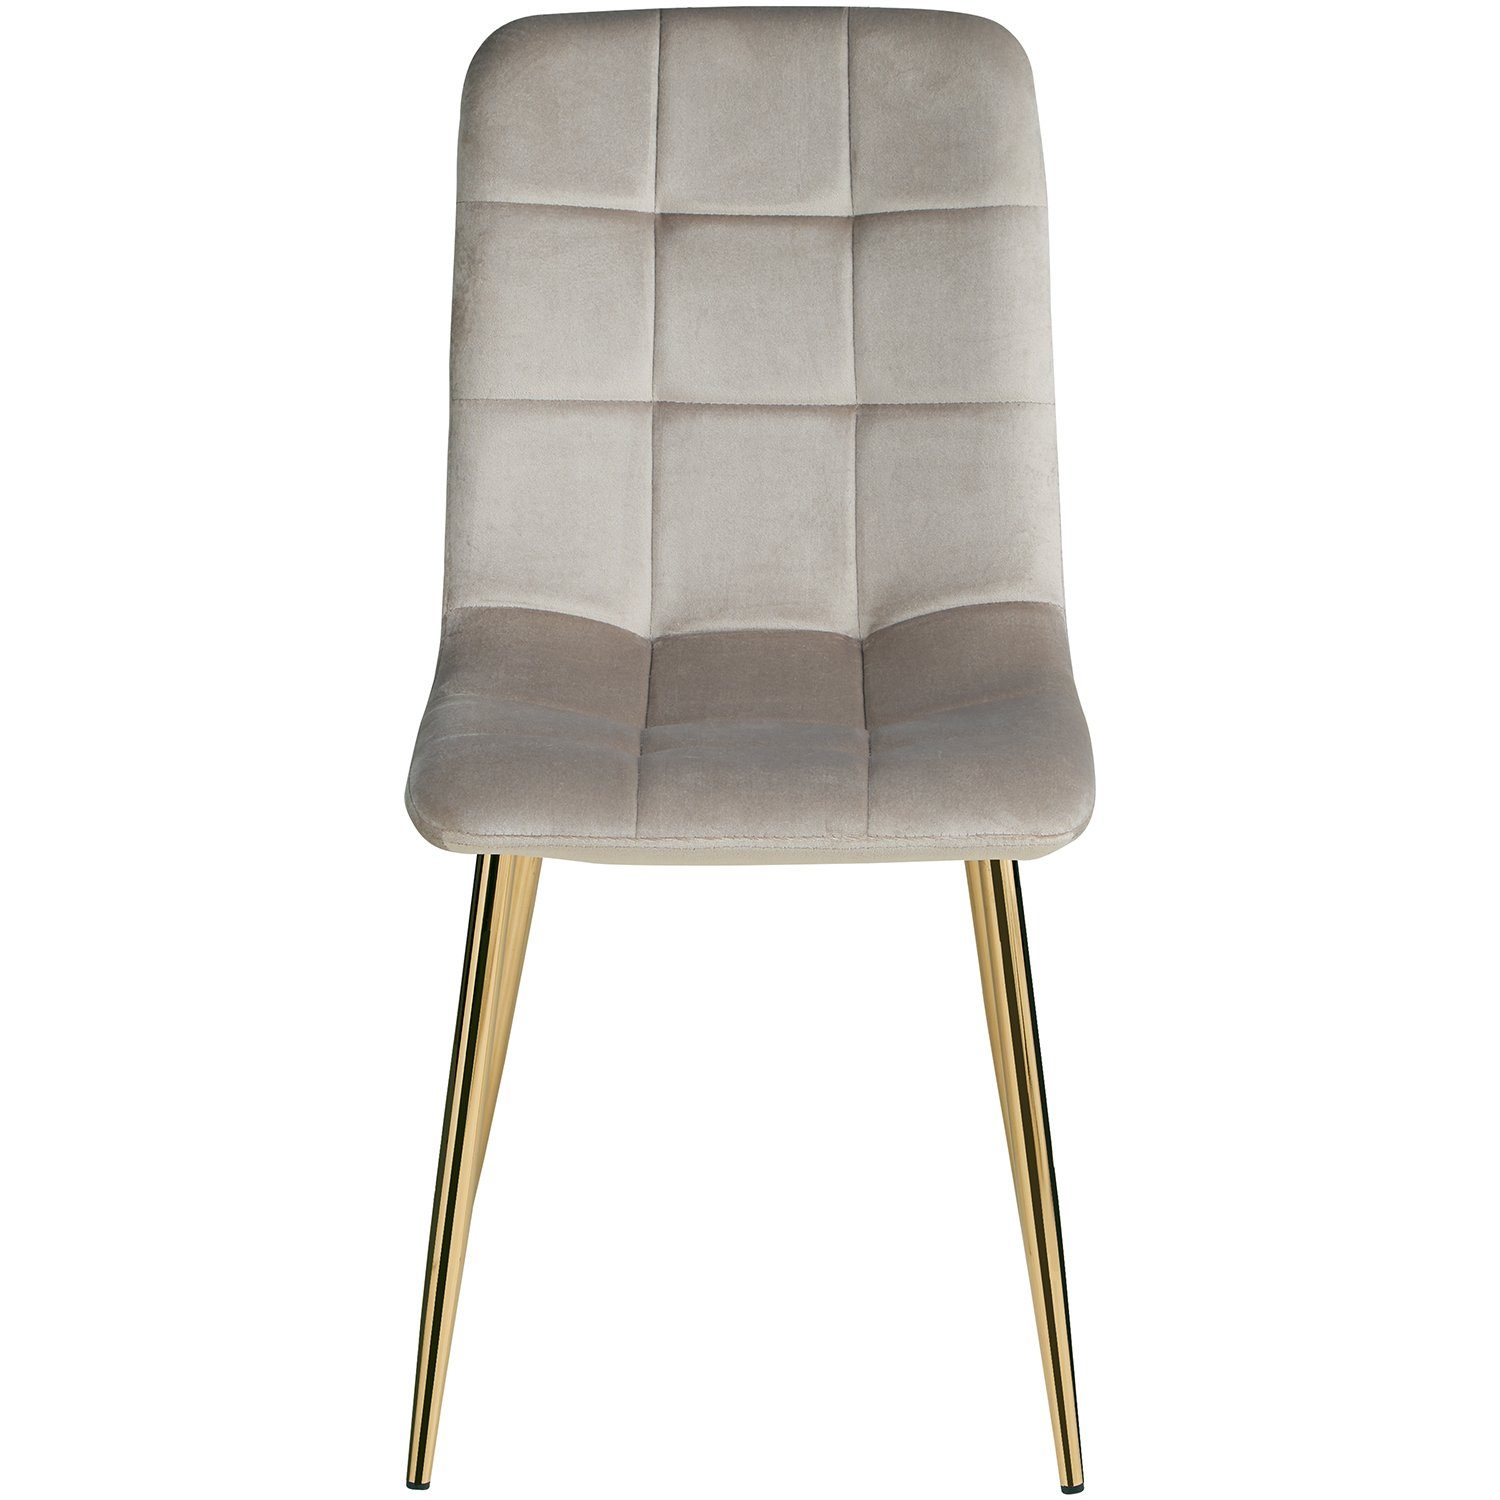 6 Stuhl Creme Küchenstuhl 2, 1, Set) | Esszimmerstuhl gold Polsterstuhl Stühle Homestyle4u (kein 4,